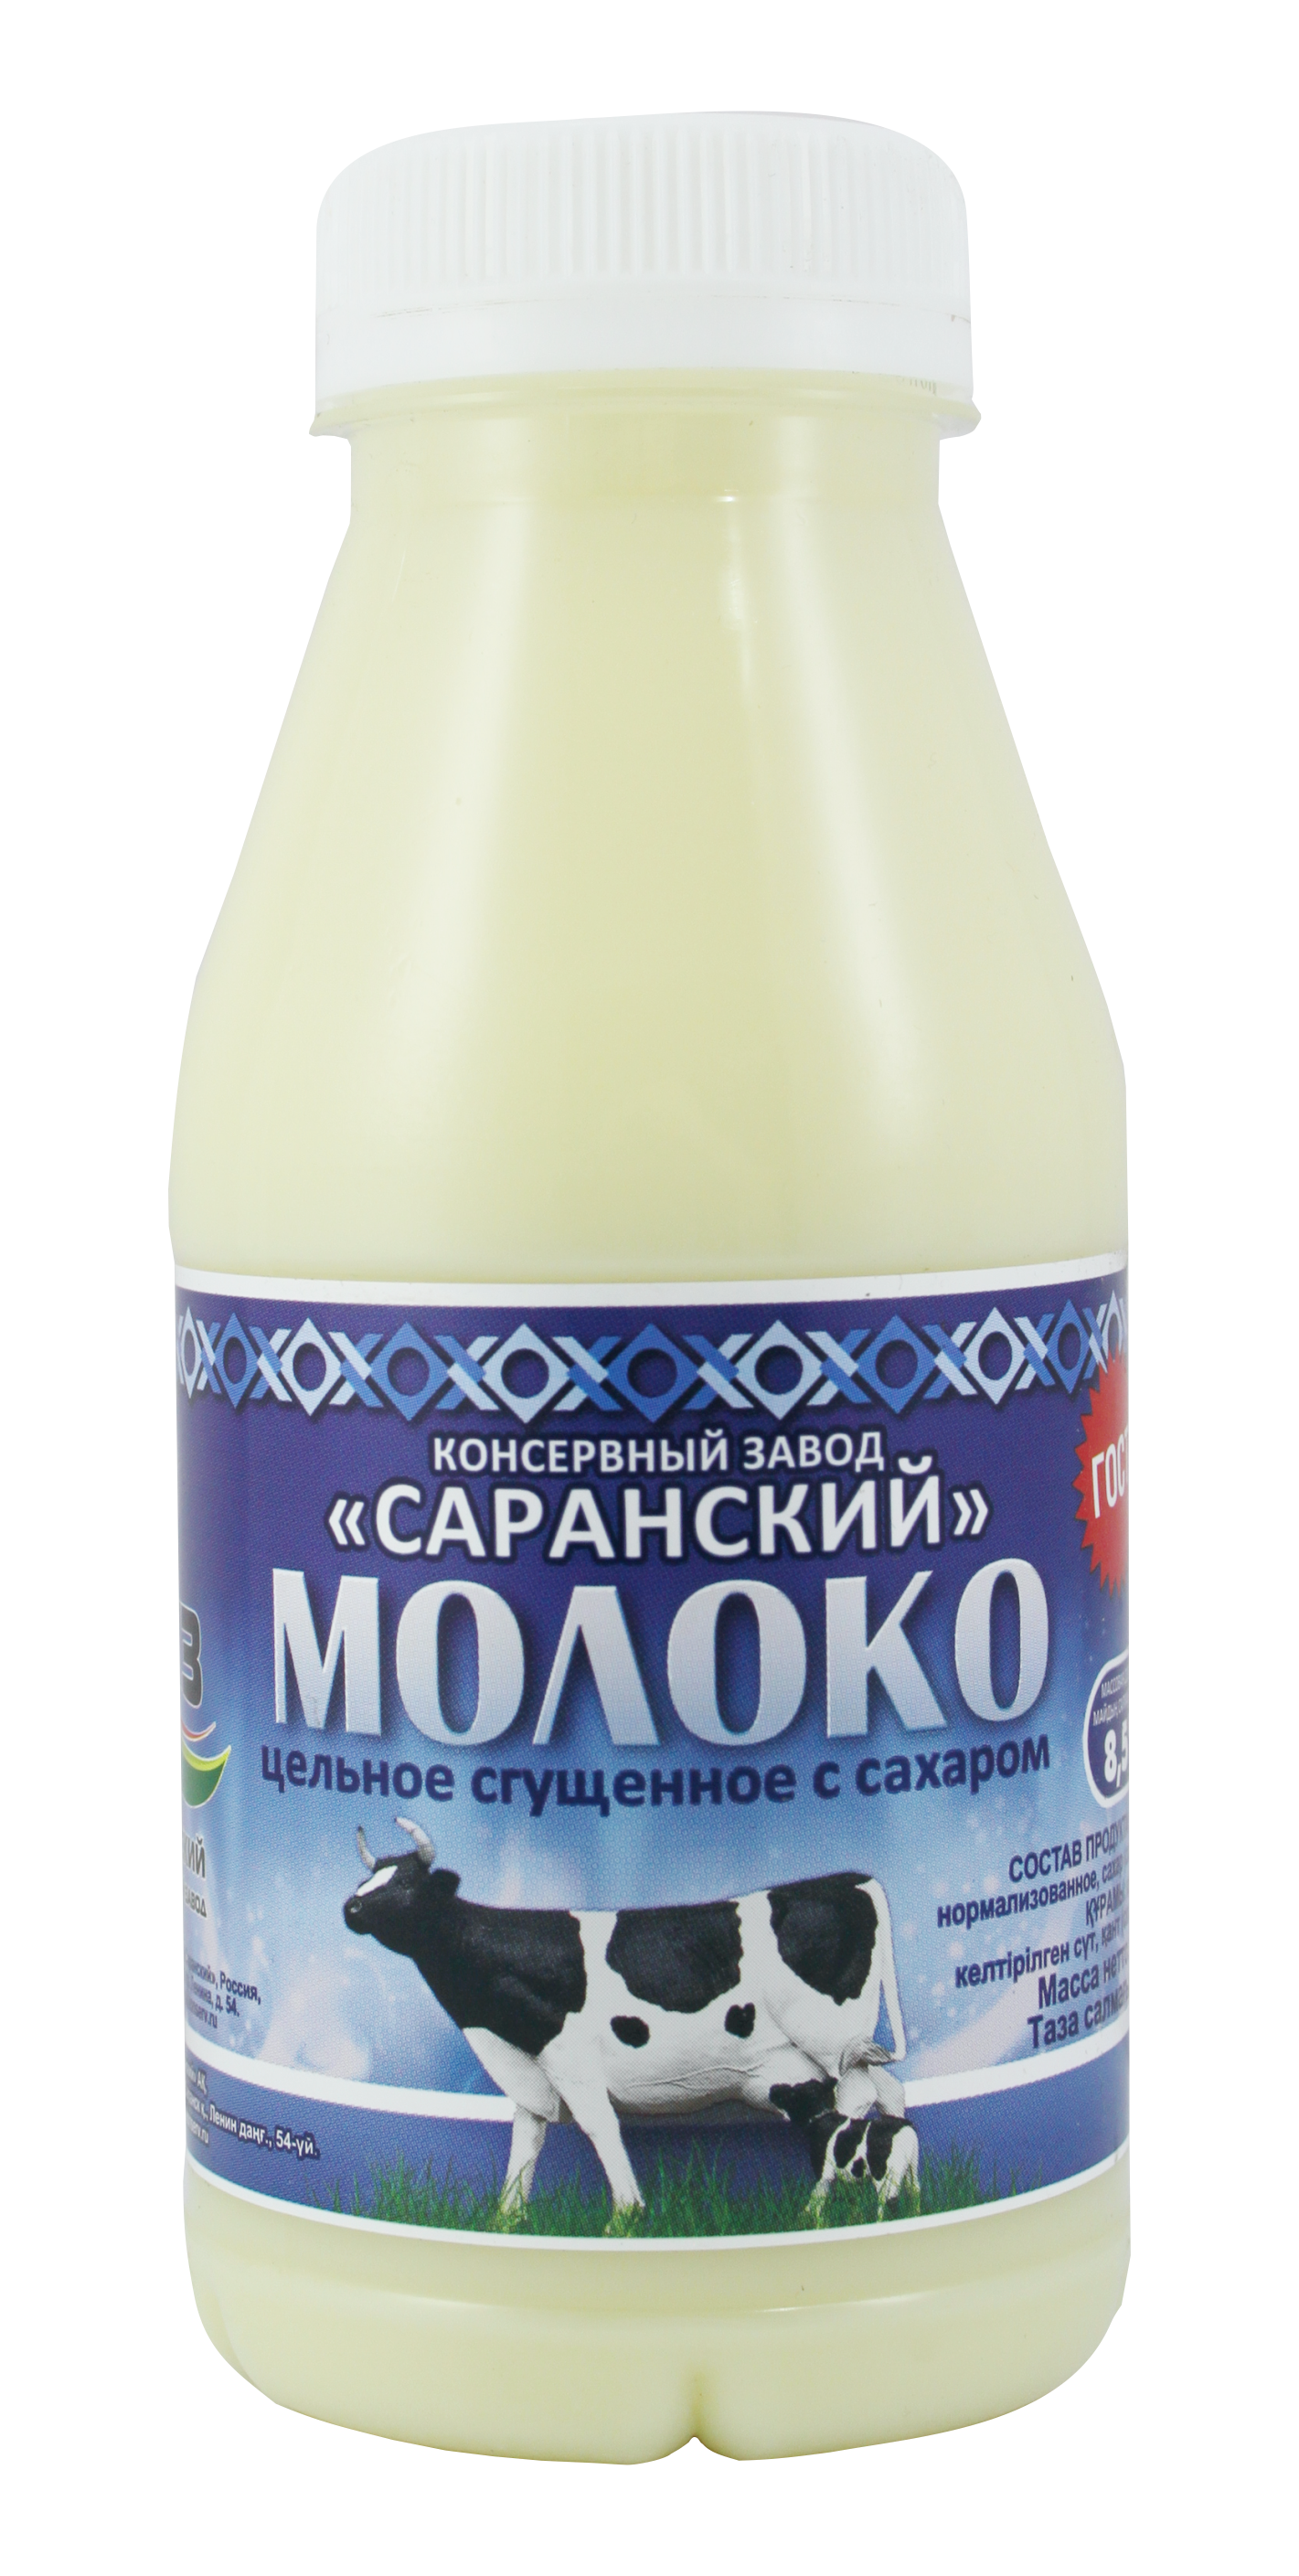 Молоко сгущенное АО "Консервный завод "Саранский"